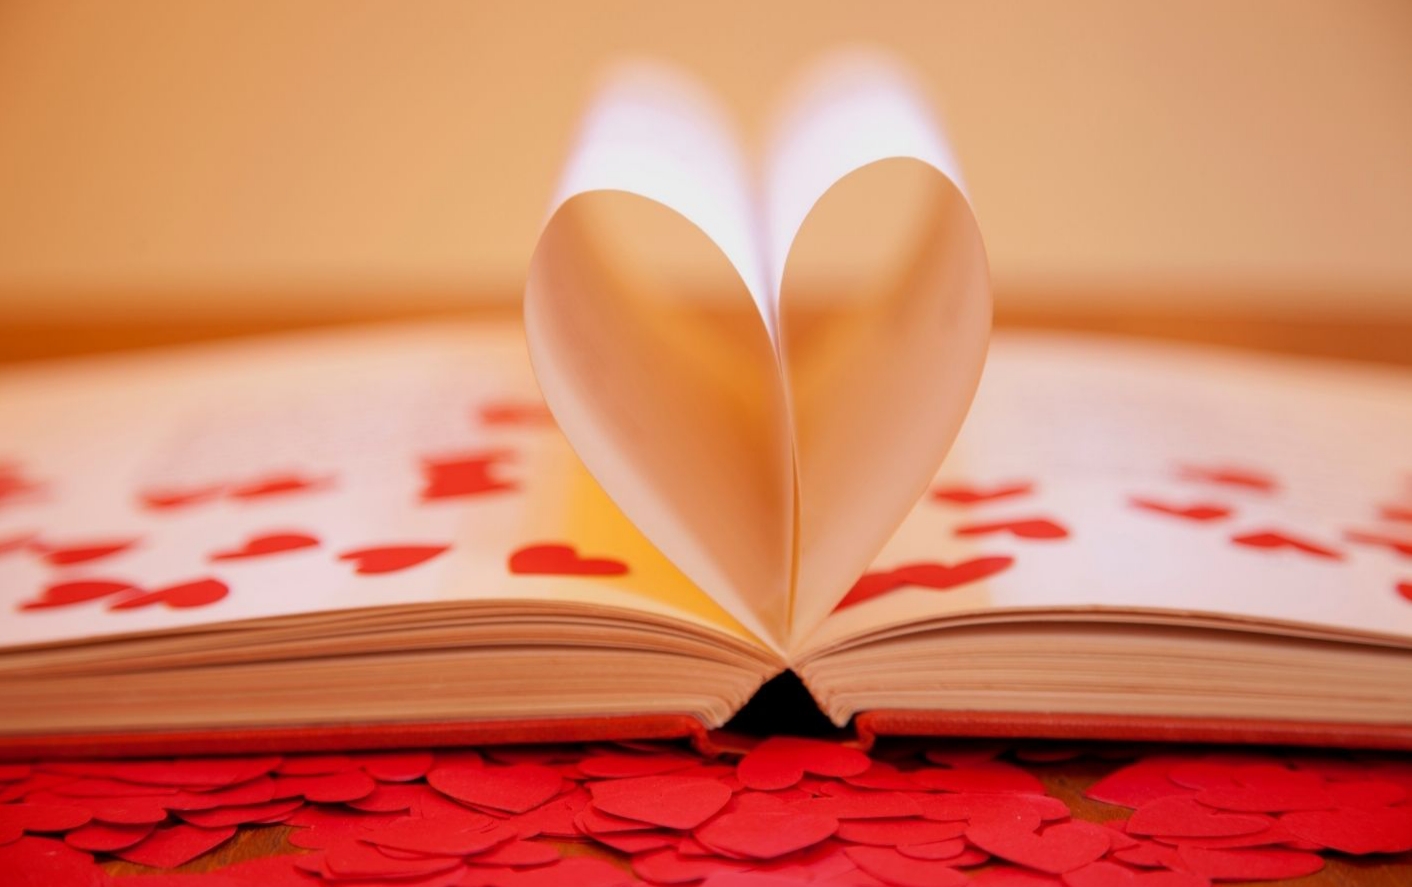 ספר פתוח שדפיו יוצרים לב. ובצד שמאל כתוב "זאת שיודעת" בצבע אדום